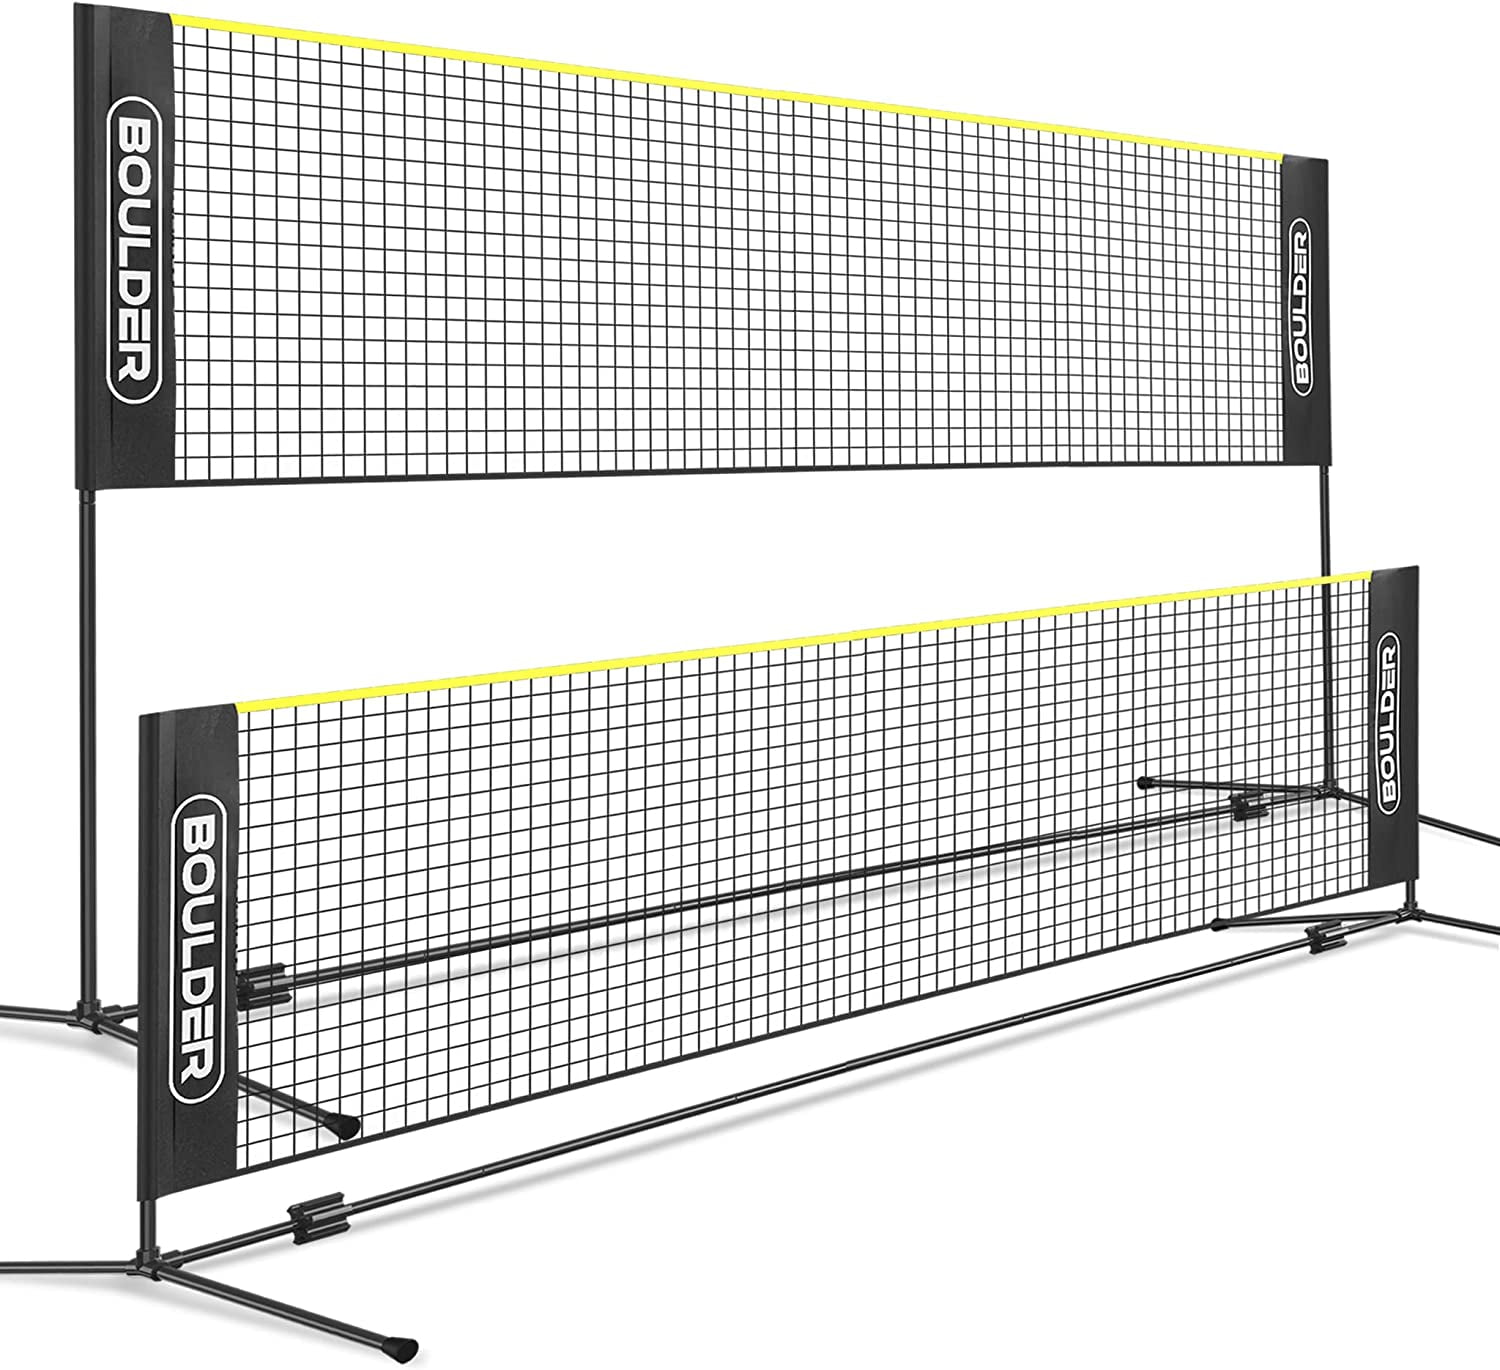 badminton net with pole price